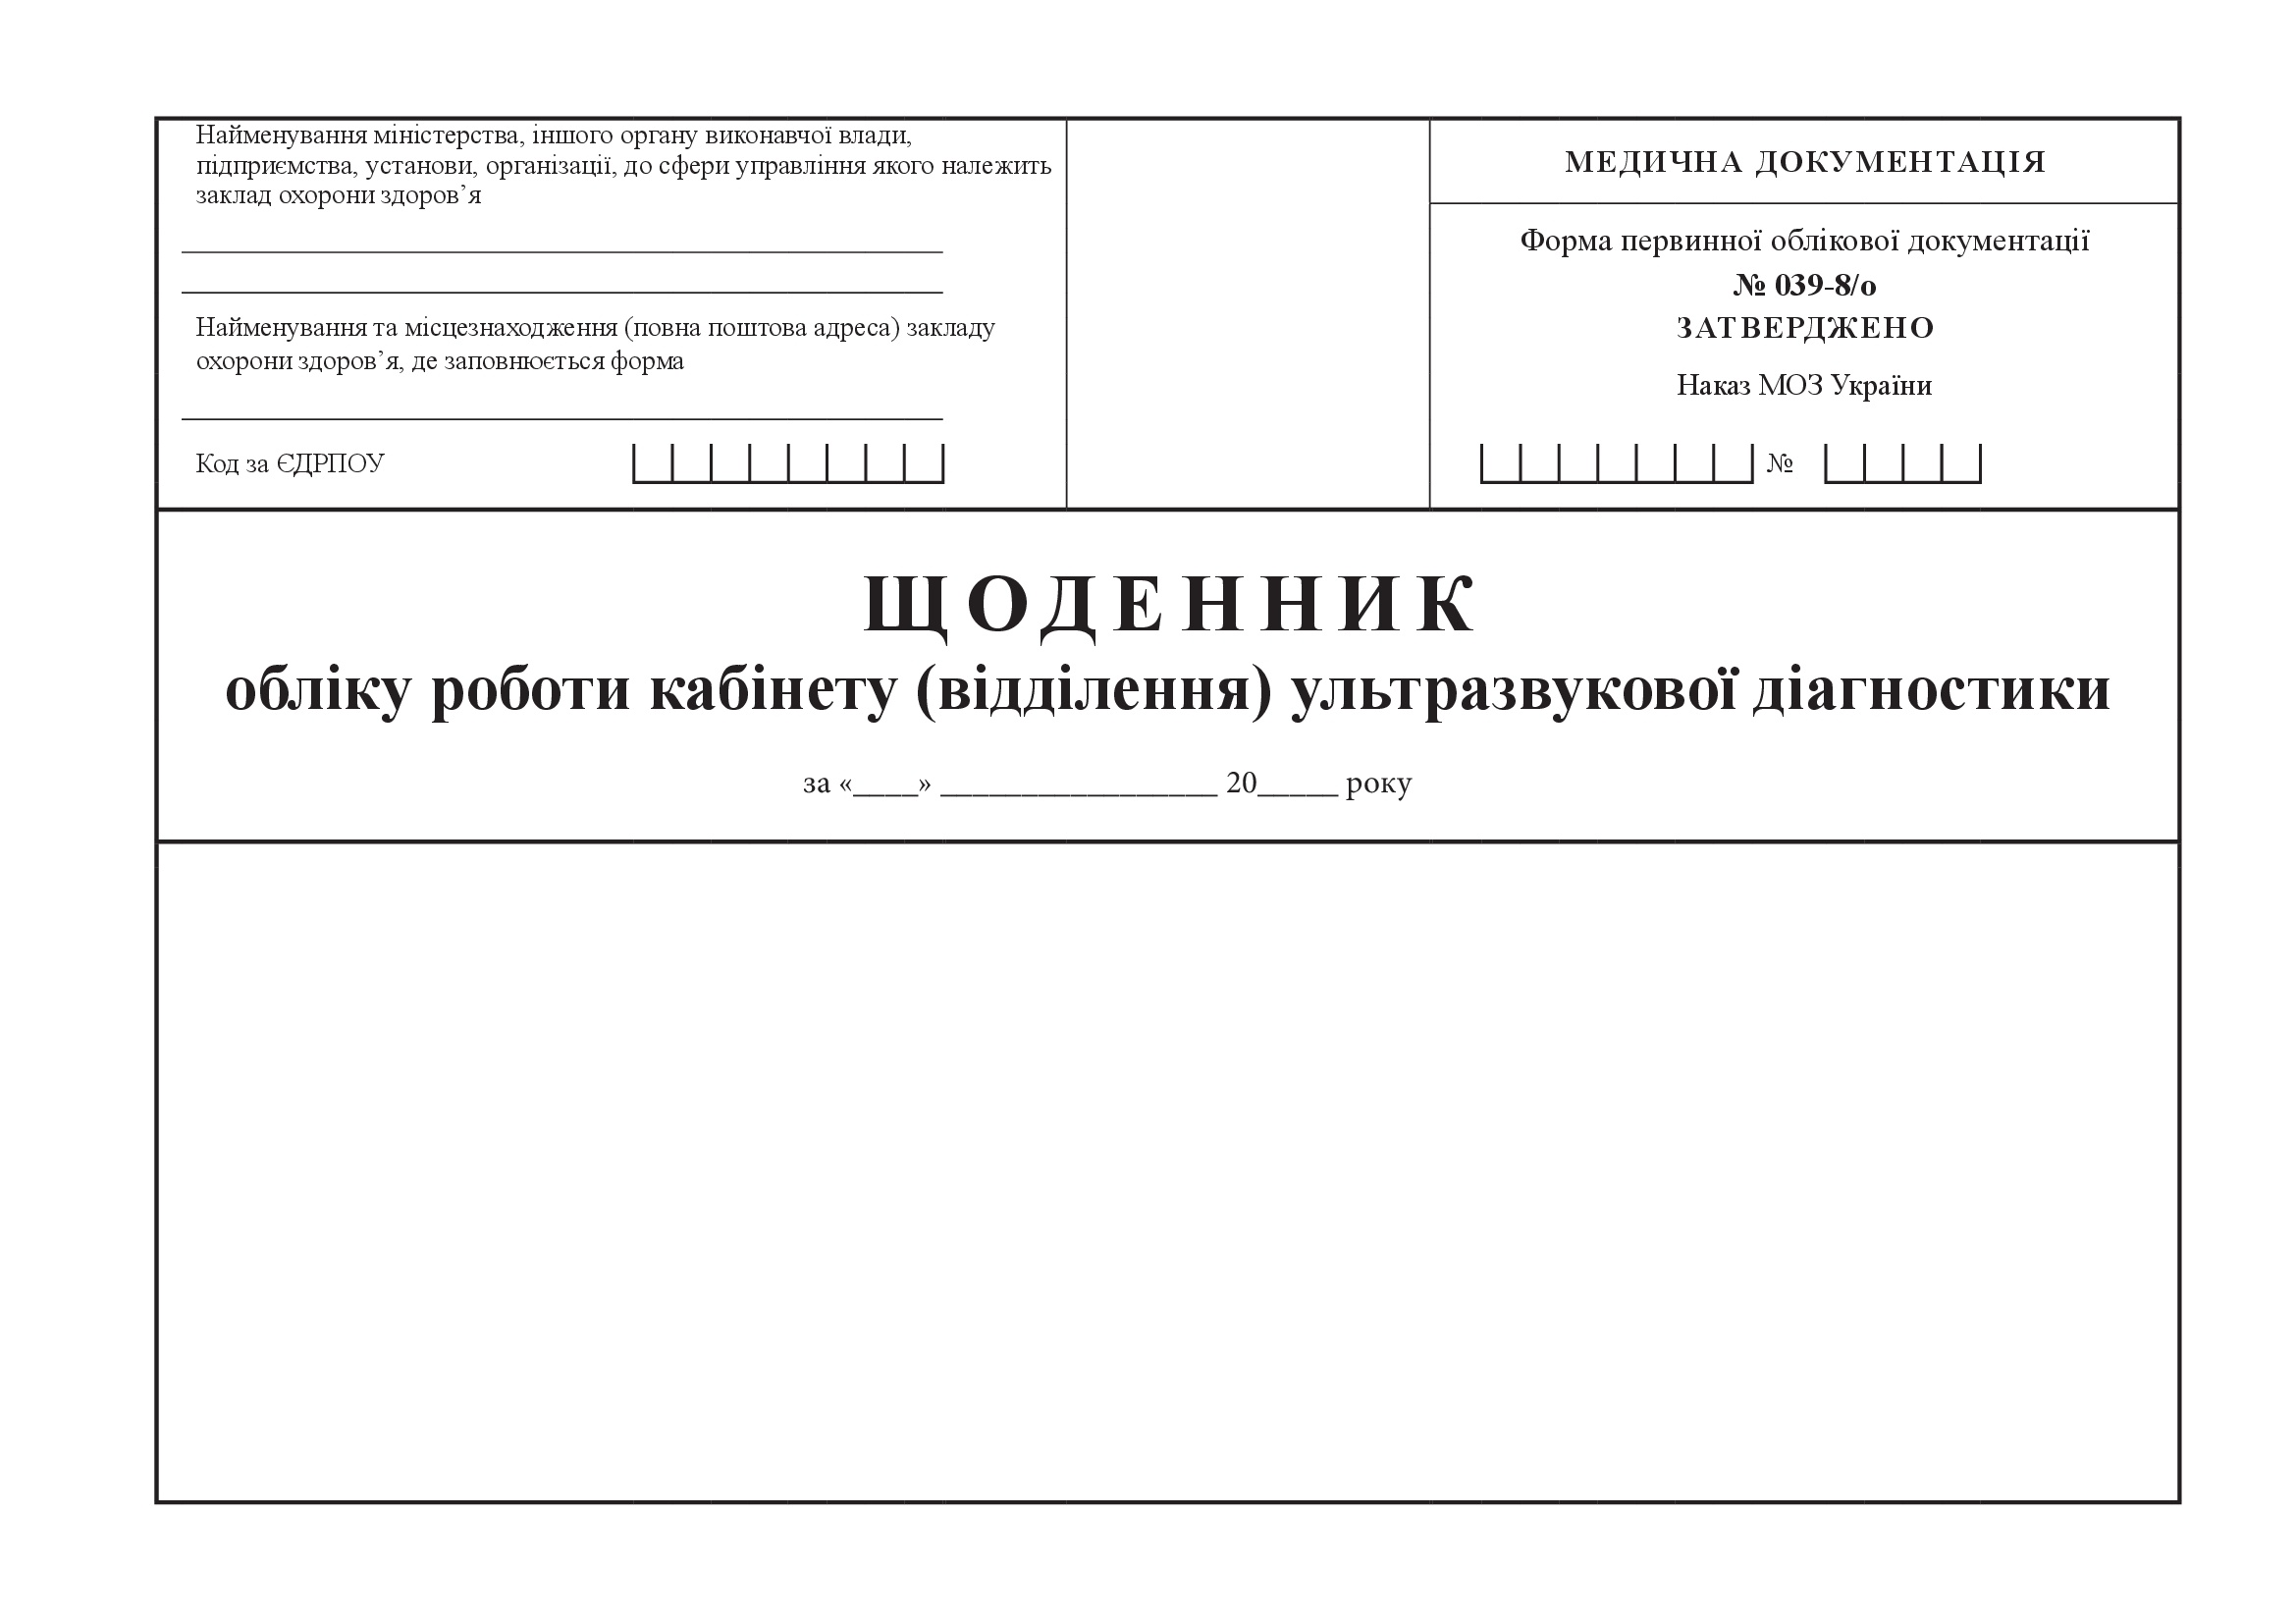 Щоденник обліку роботи кабінету (відділення) ультразвукової діагностики, форма 039-8/о. Автор — Міністерство охорони здоров'я України. 